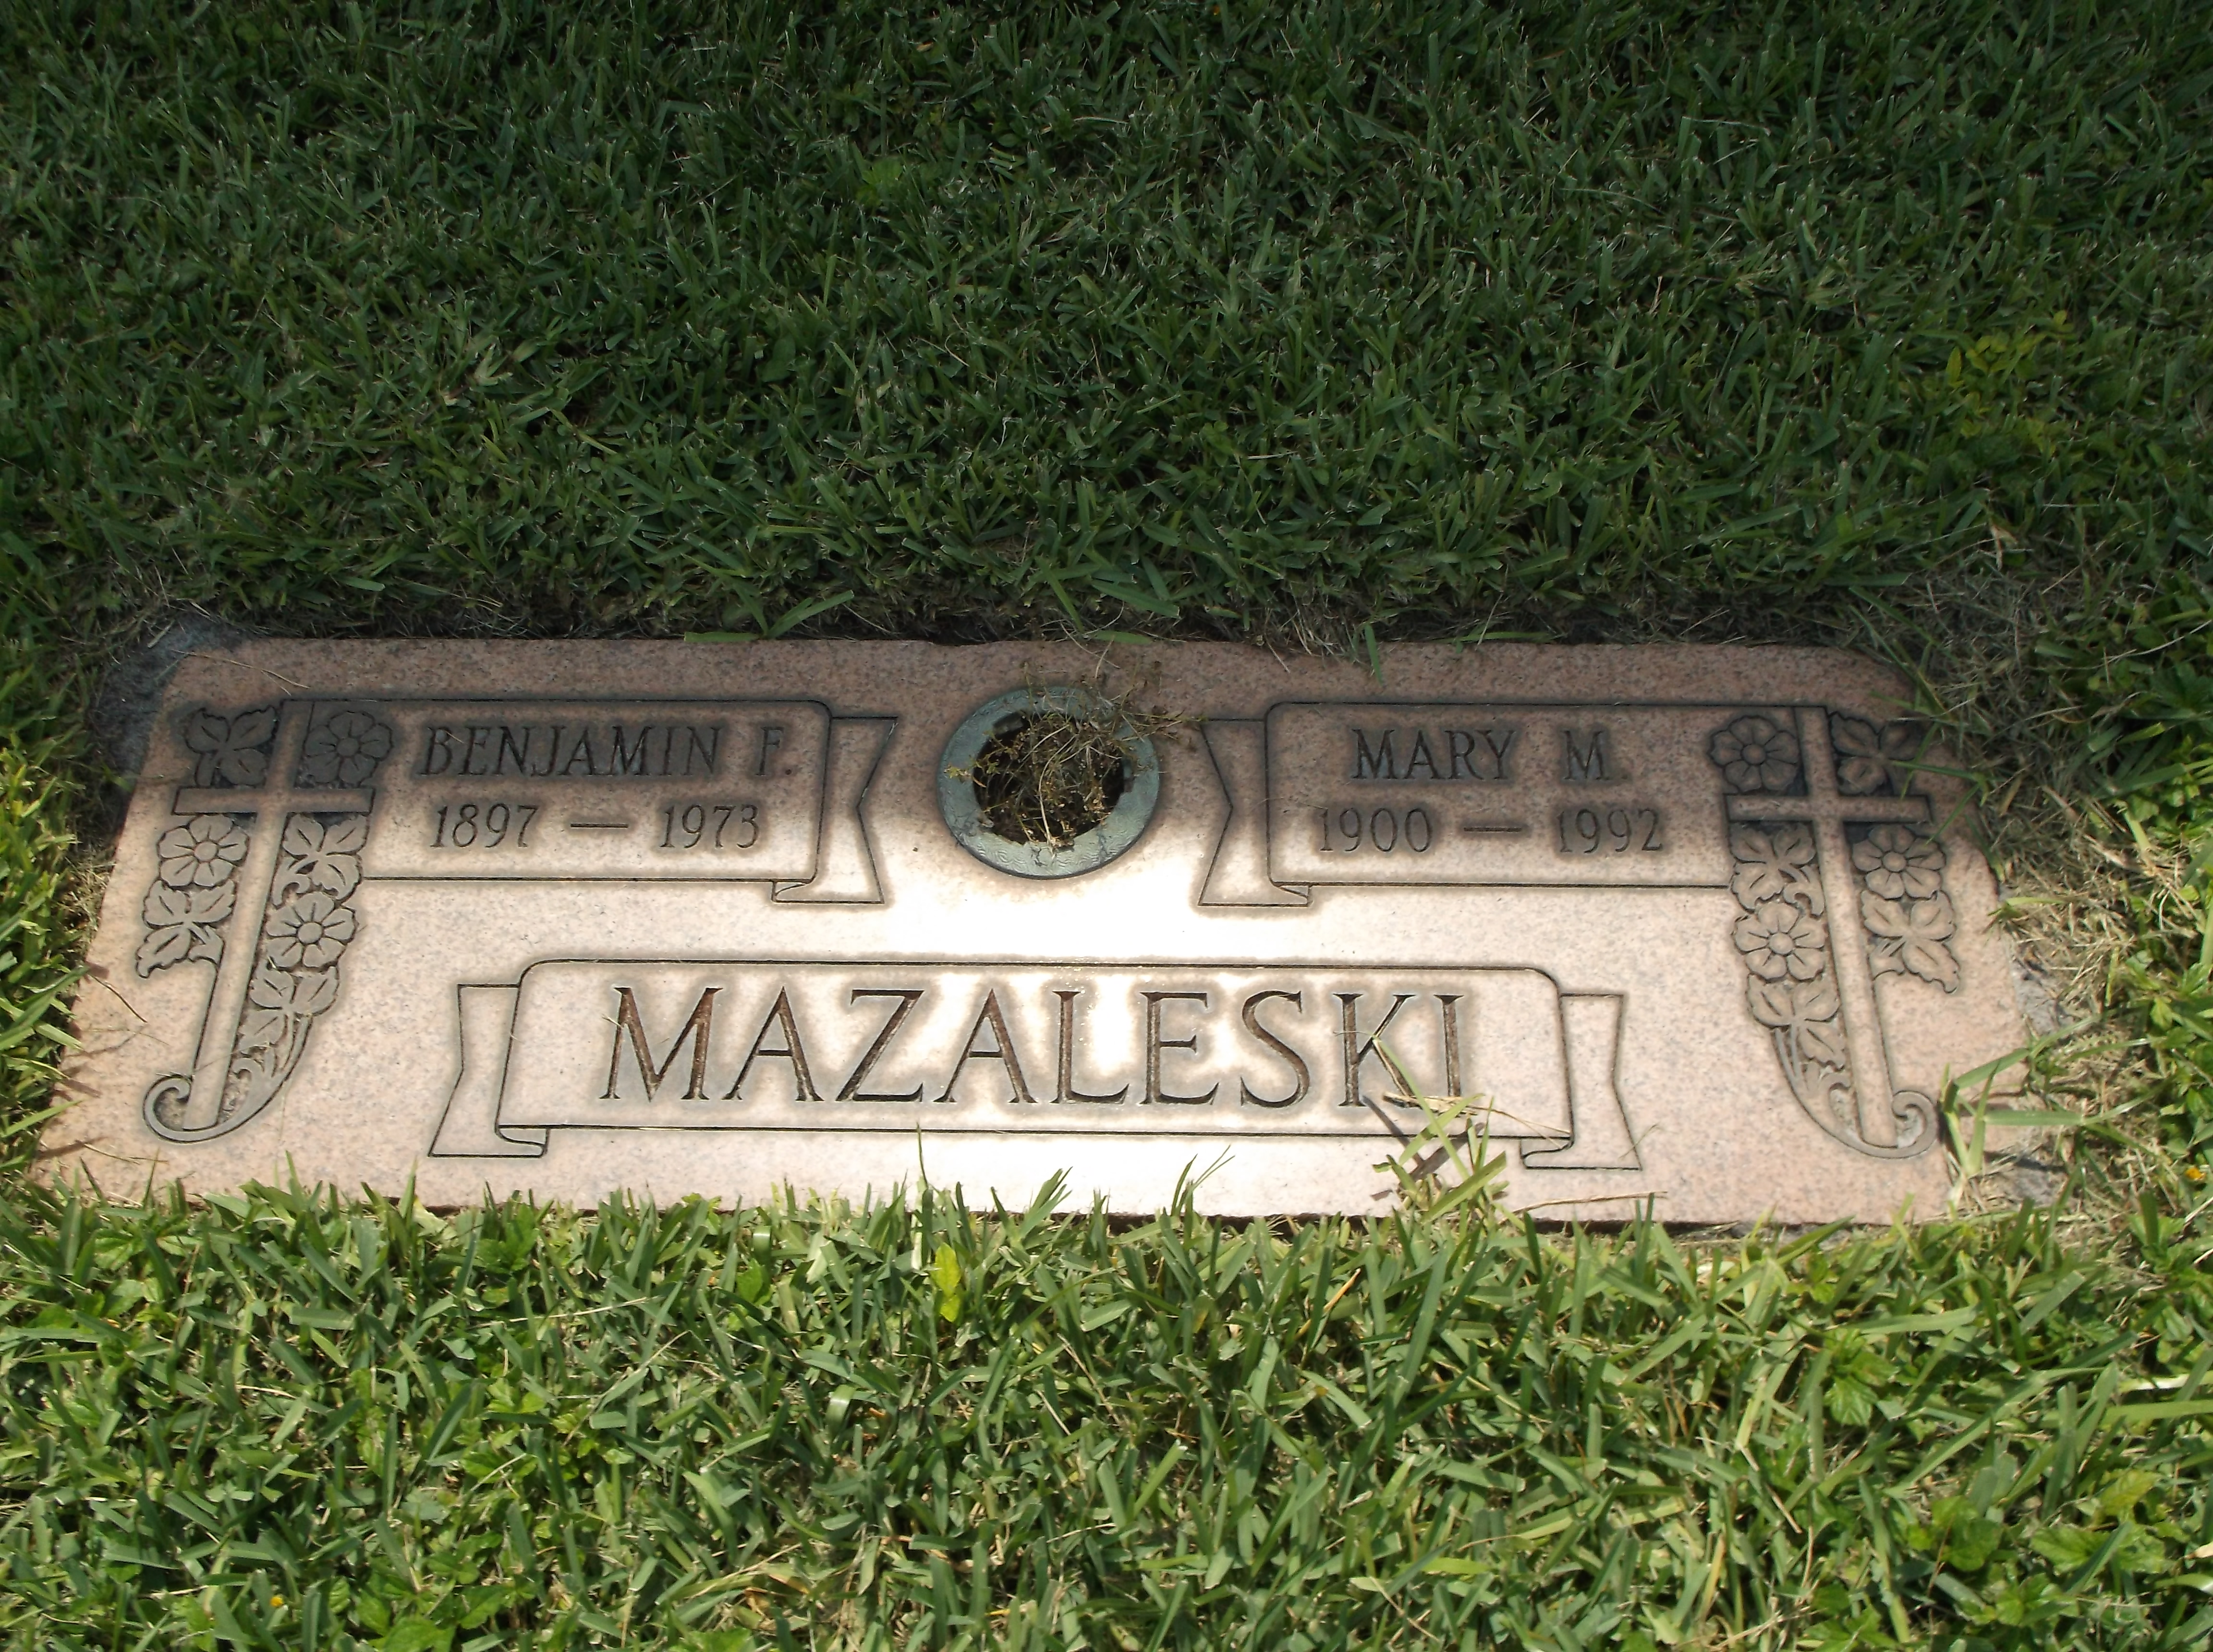 Mary M Mazaleski